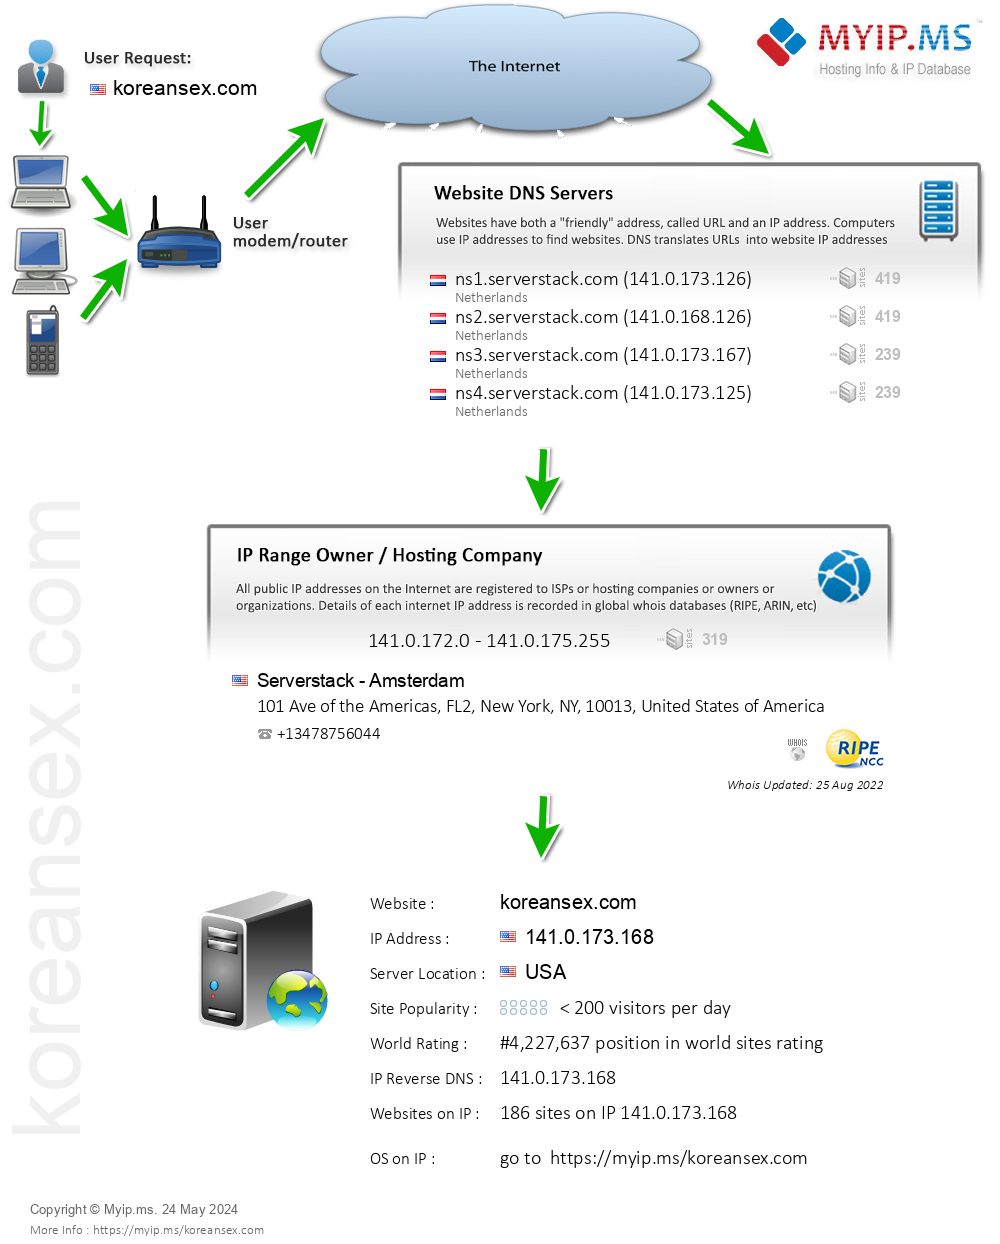 Koreansex.com - Website Hosting Visual IP Diagram